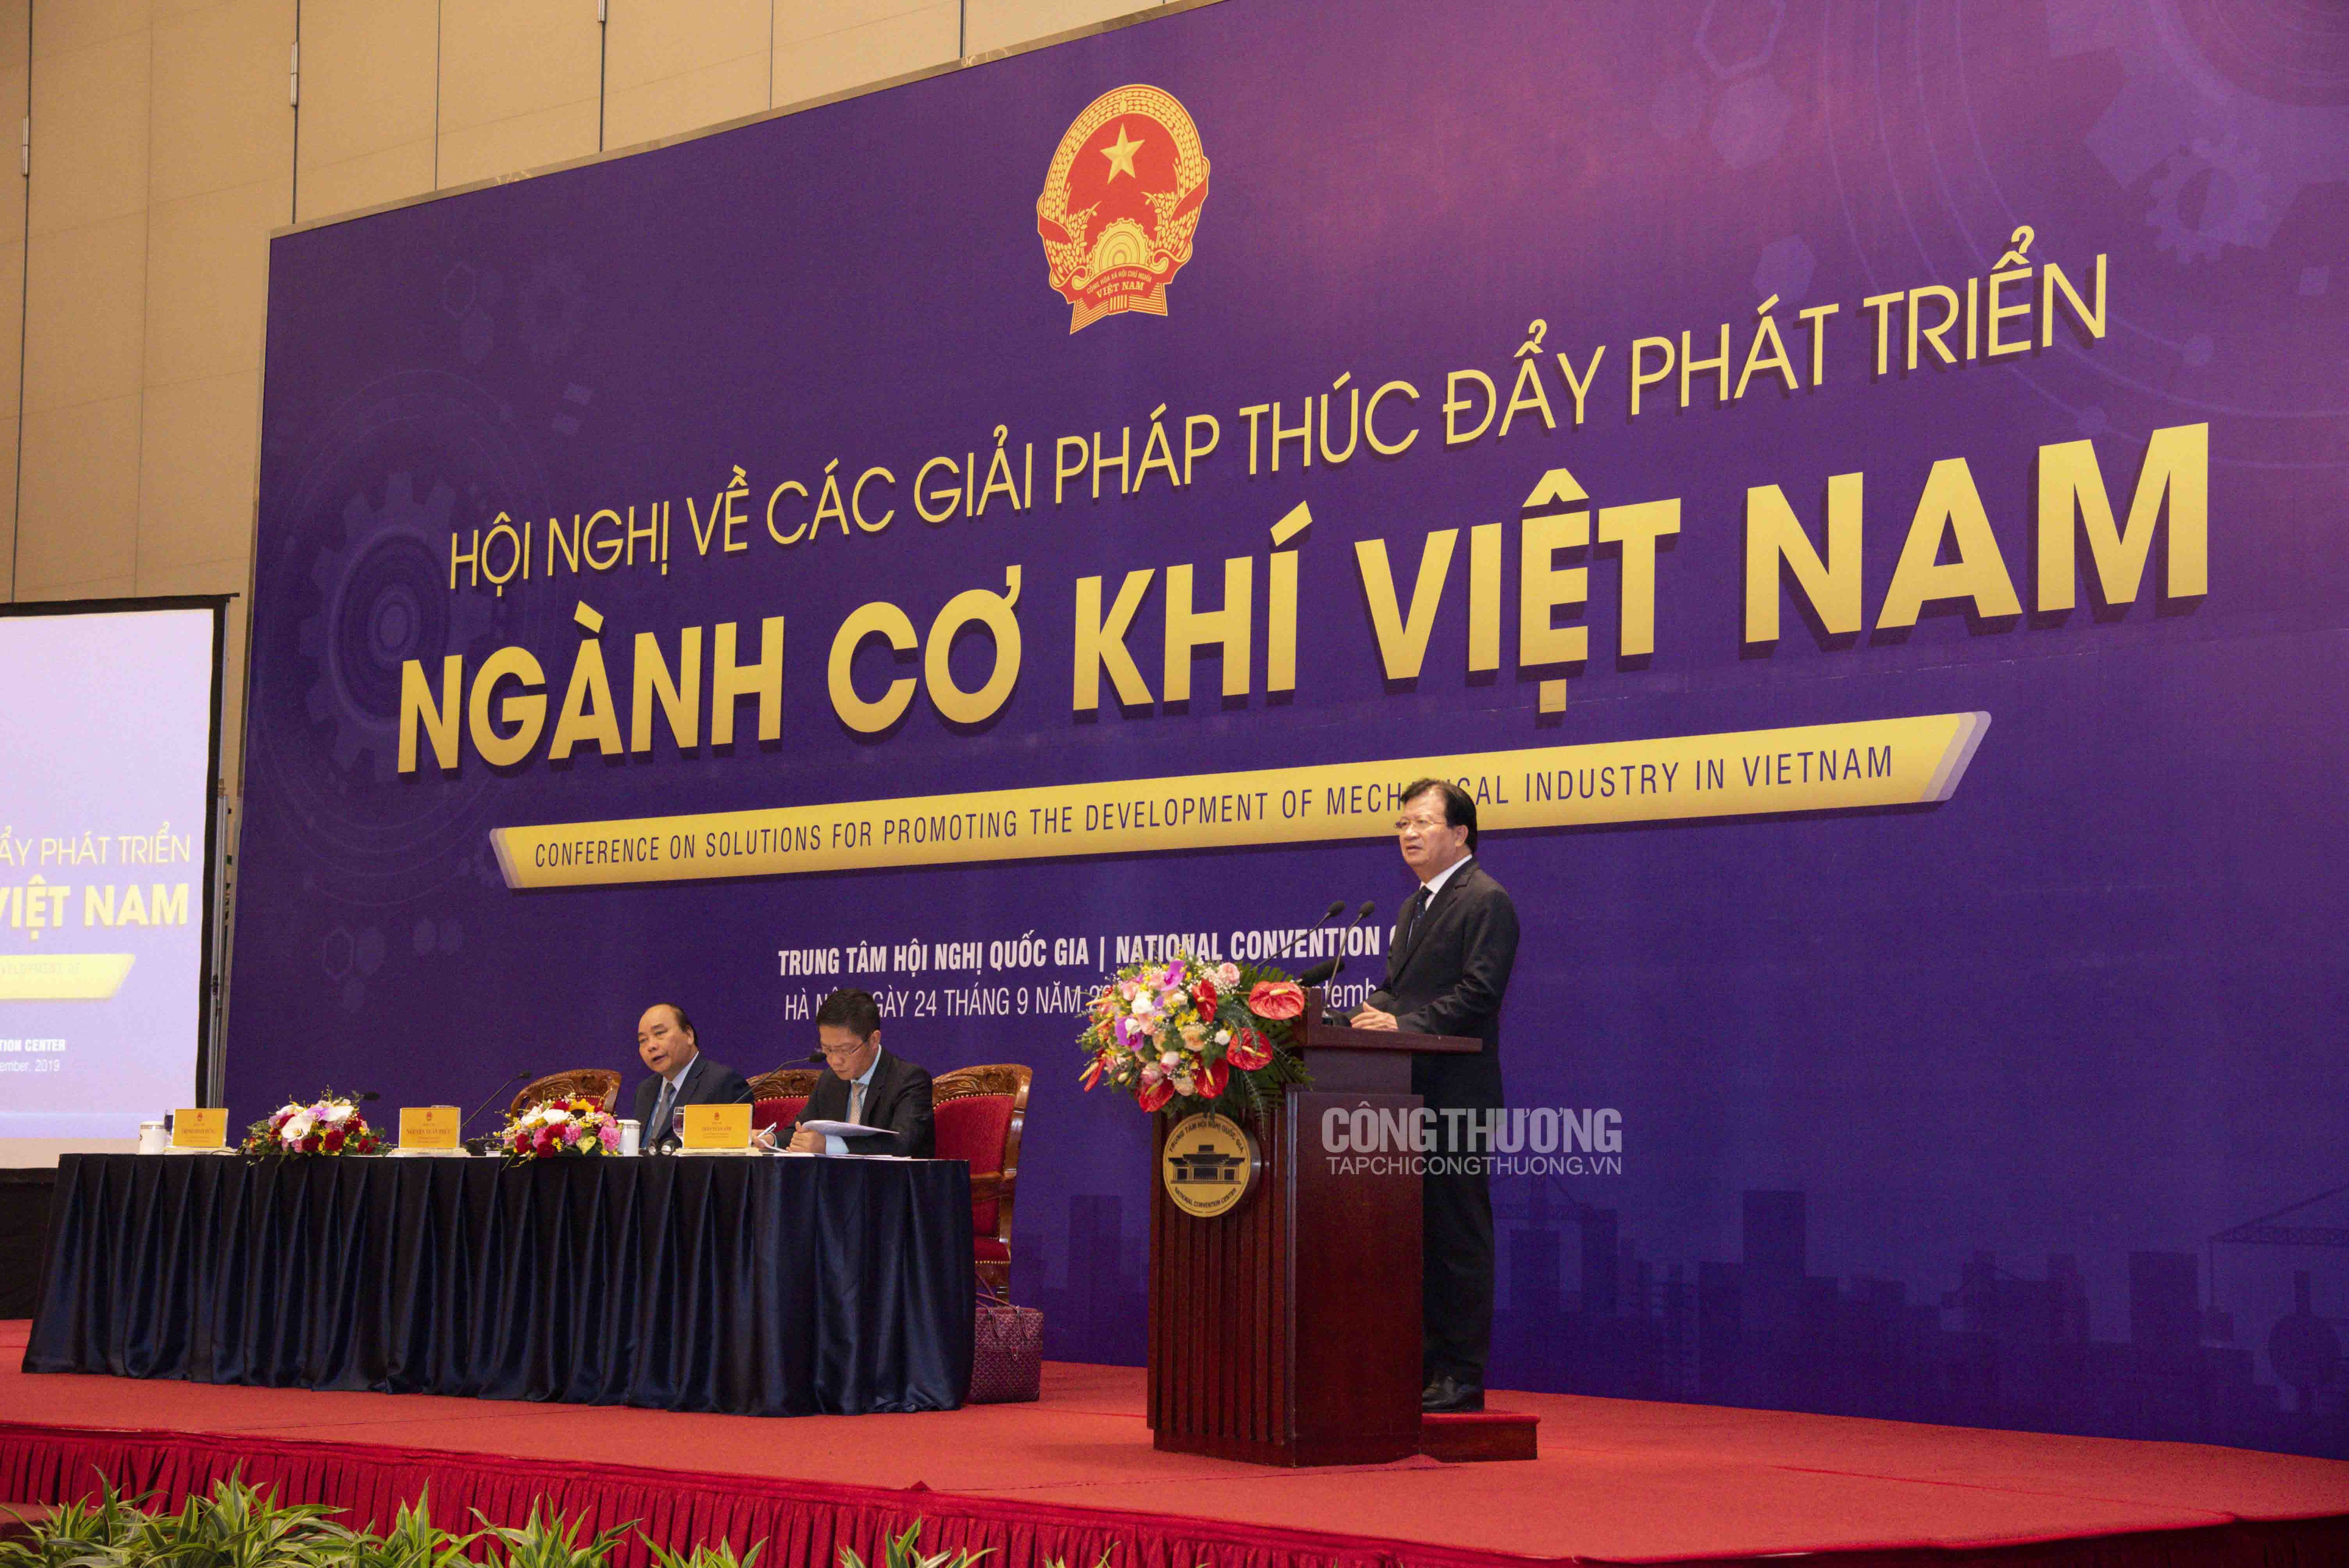 Phó Thủ tướng Trịnh Đình Dũng cho biết thời gian qua Nhà nước, Chính phủ đã ban hành nhiều chính sách thúc đẩy phát triển ngành cơ khí